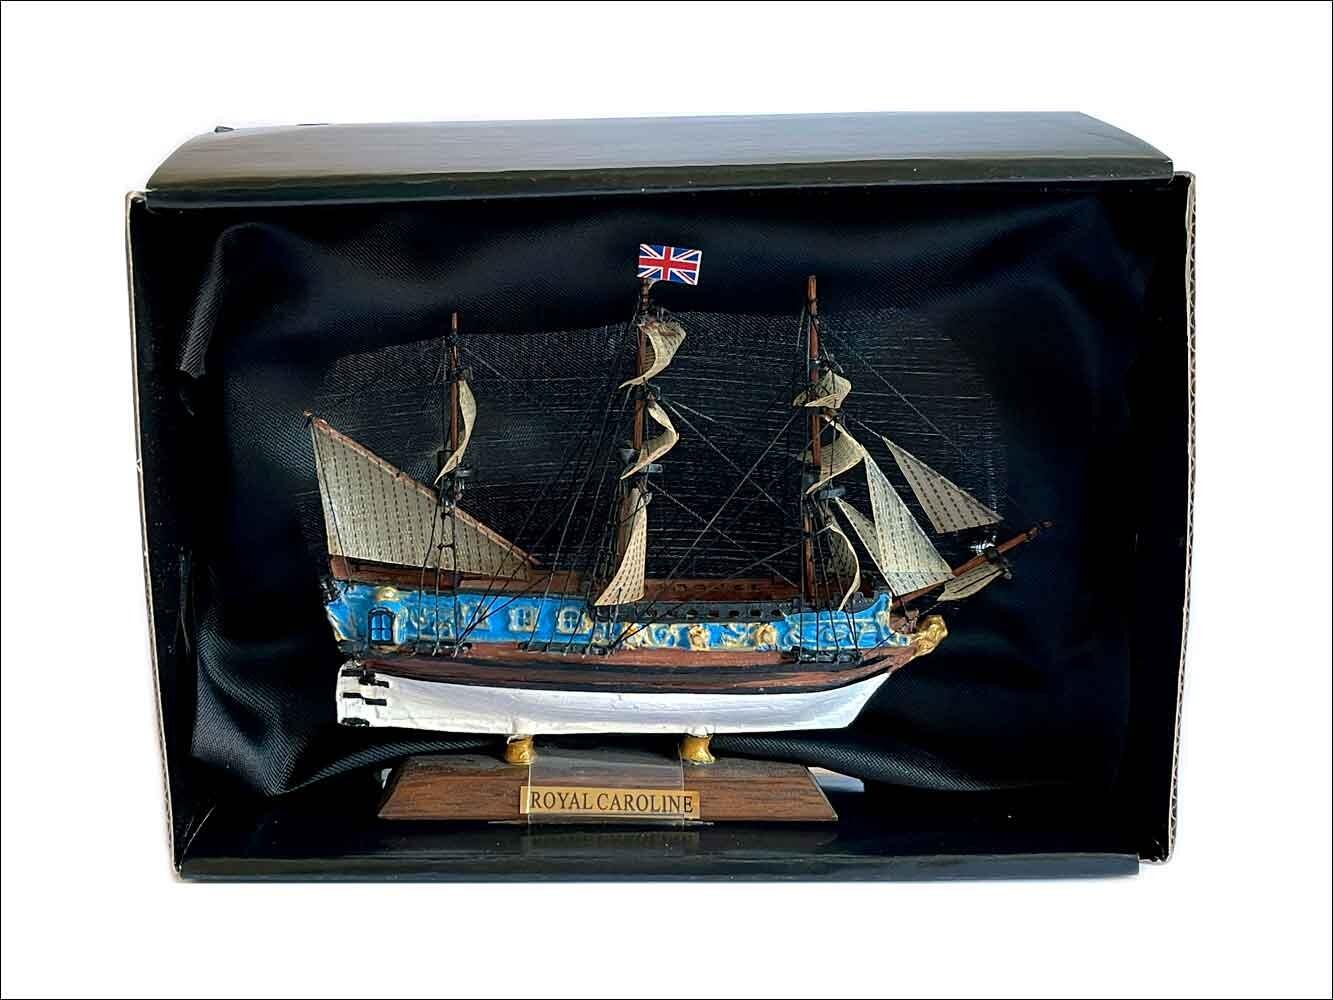 Royal Caroline Miniature ship model